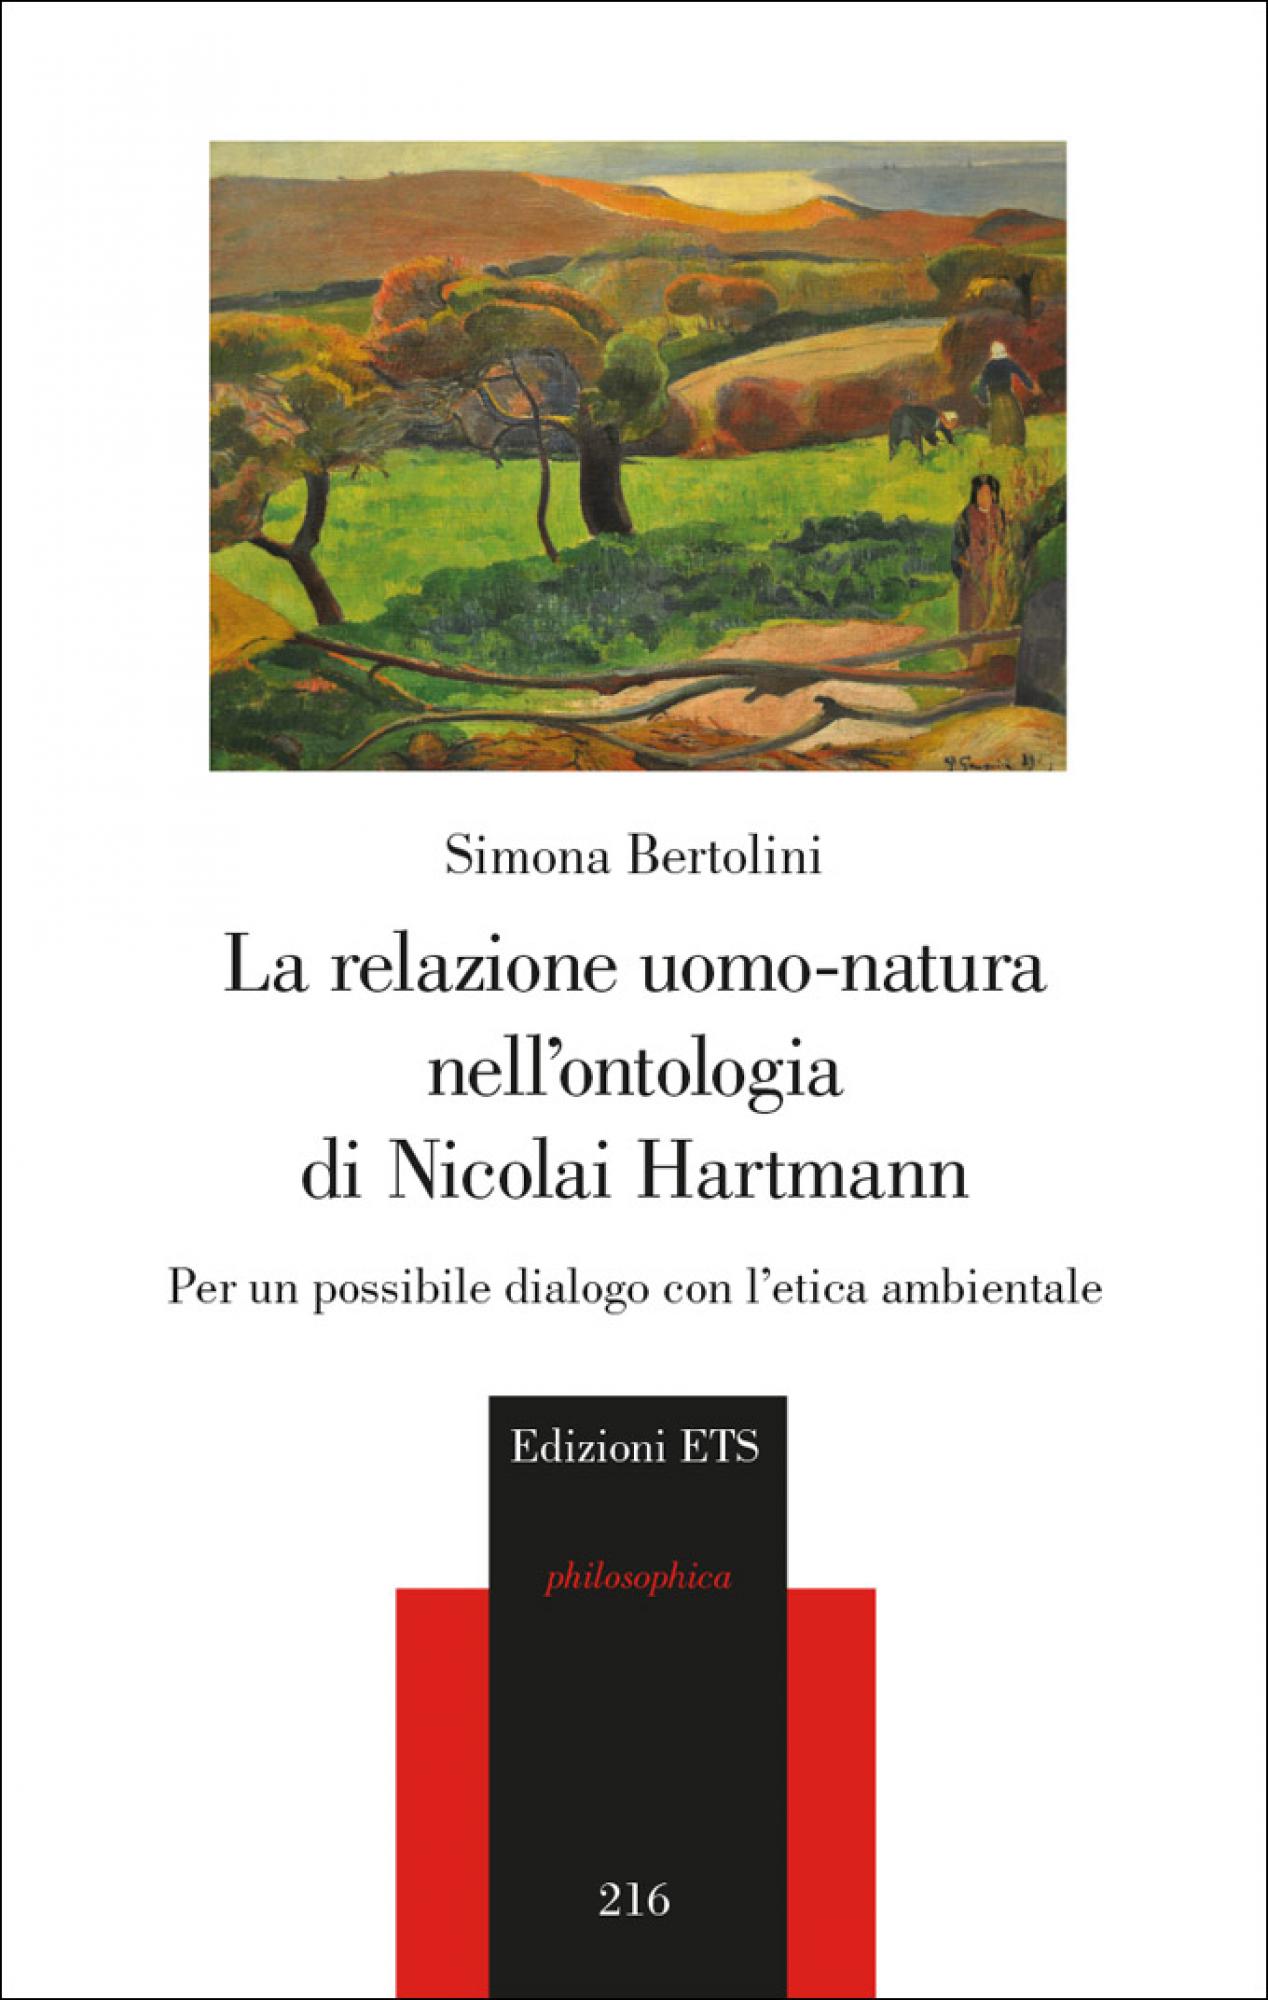 La relazione uomo-natura nell’ontologia di Nicolai Hartmann.Per un possibile dialogo con l’etica ambientale